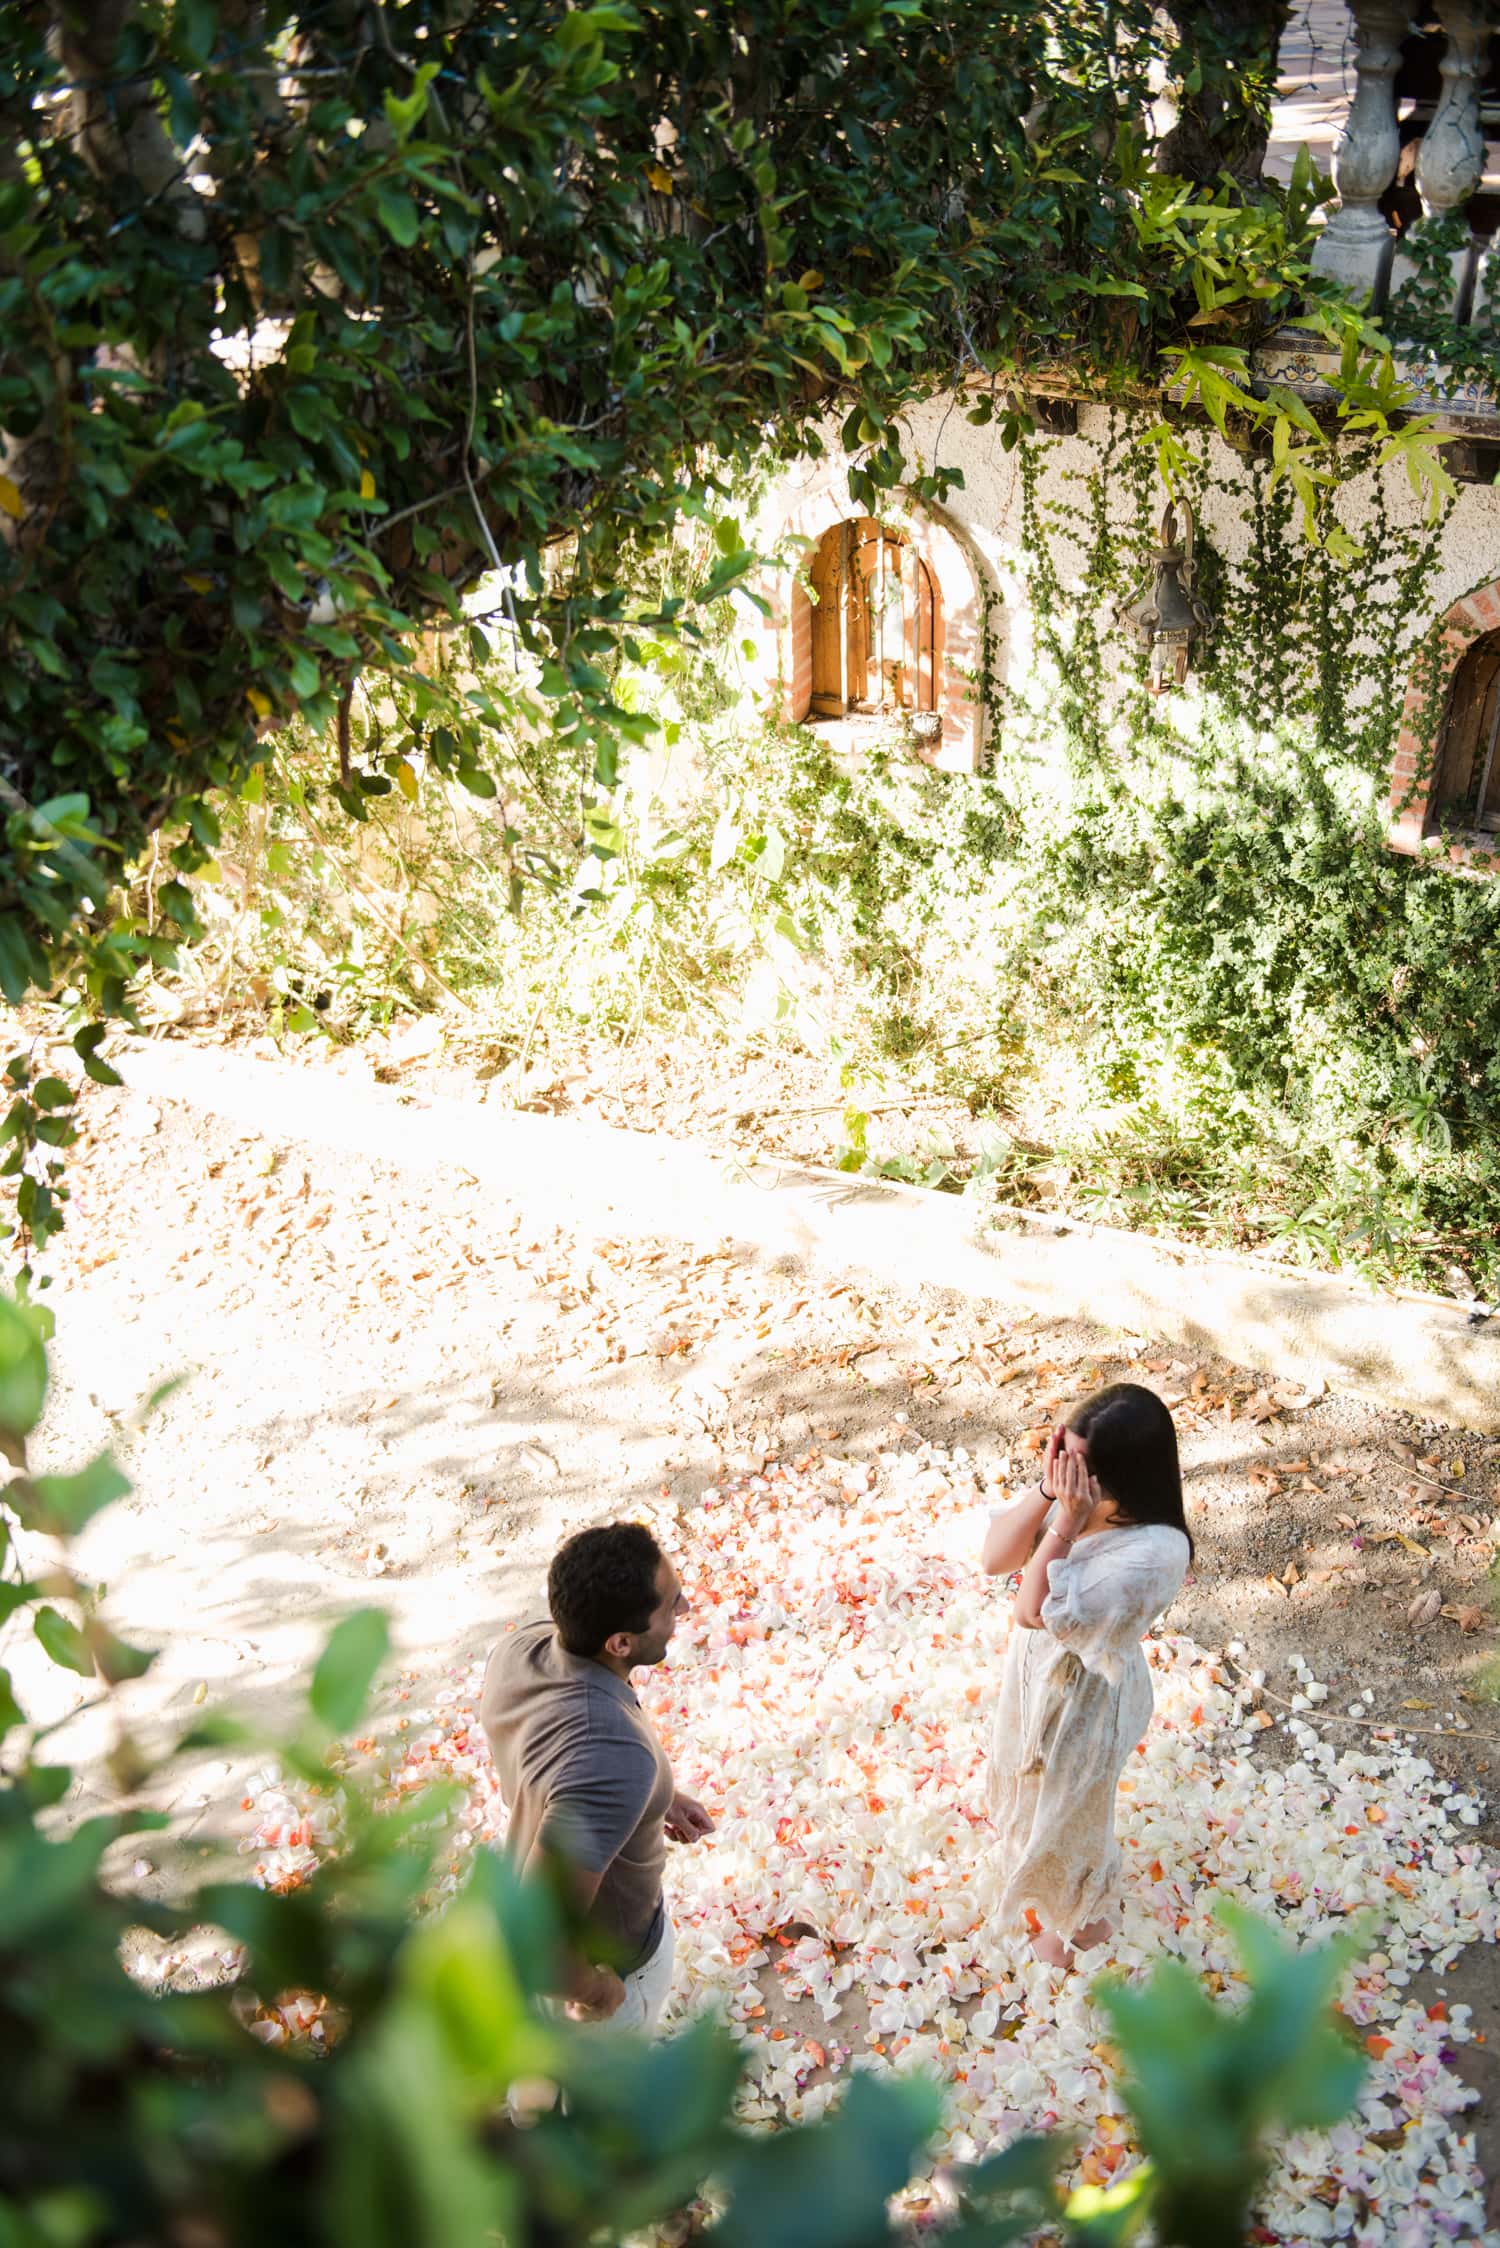 surprise proposal photography at hacienda siesta alegre a wedding venue in rio grande puerto rico